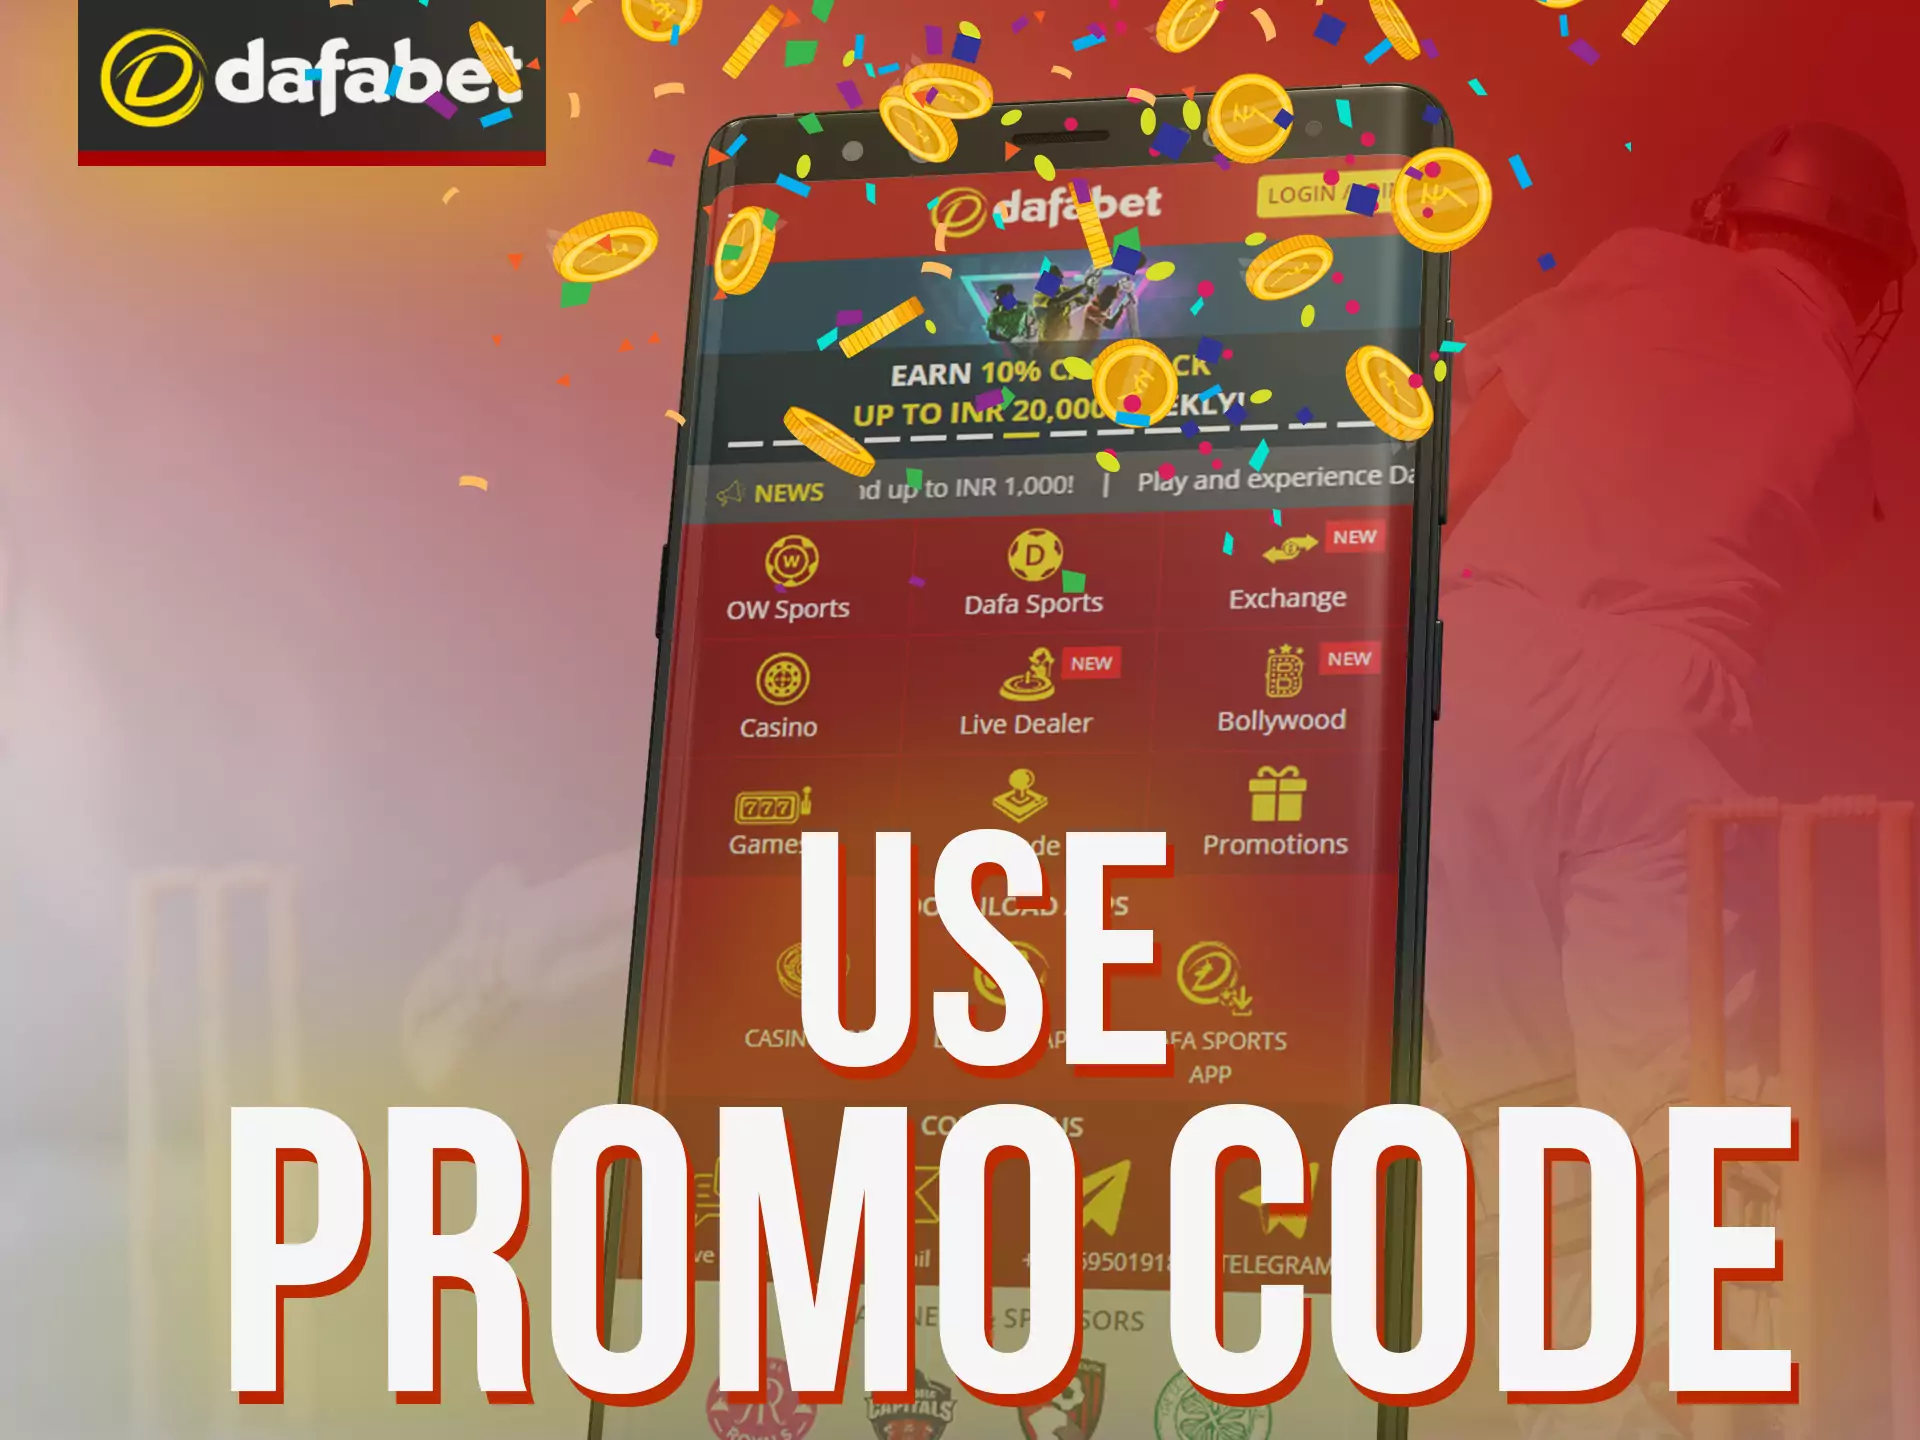 Claim your reward after using Dafabet promocode.